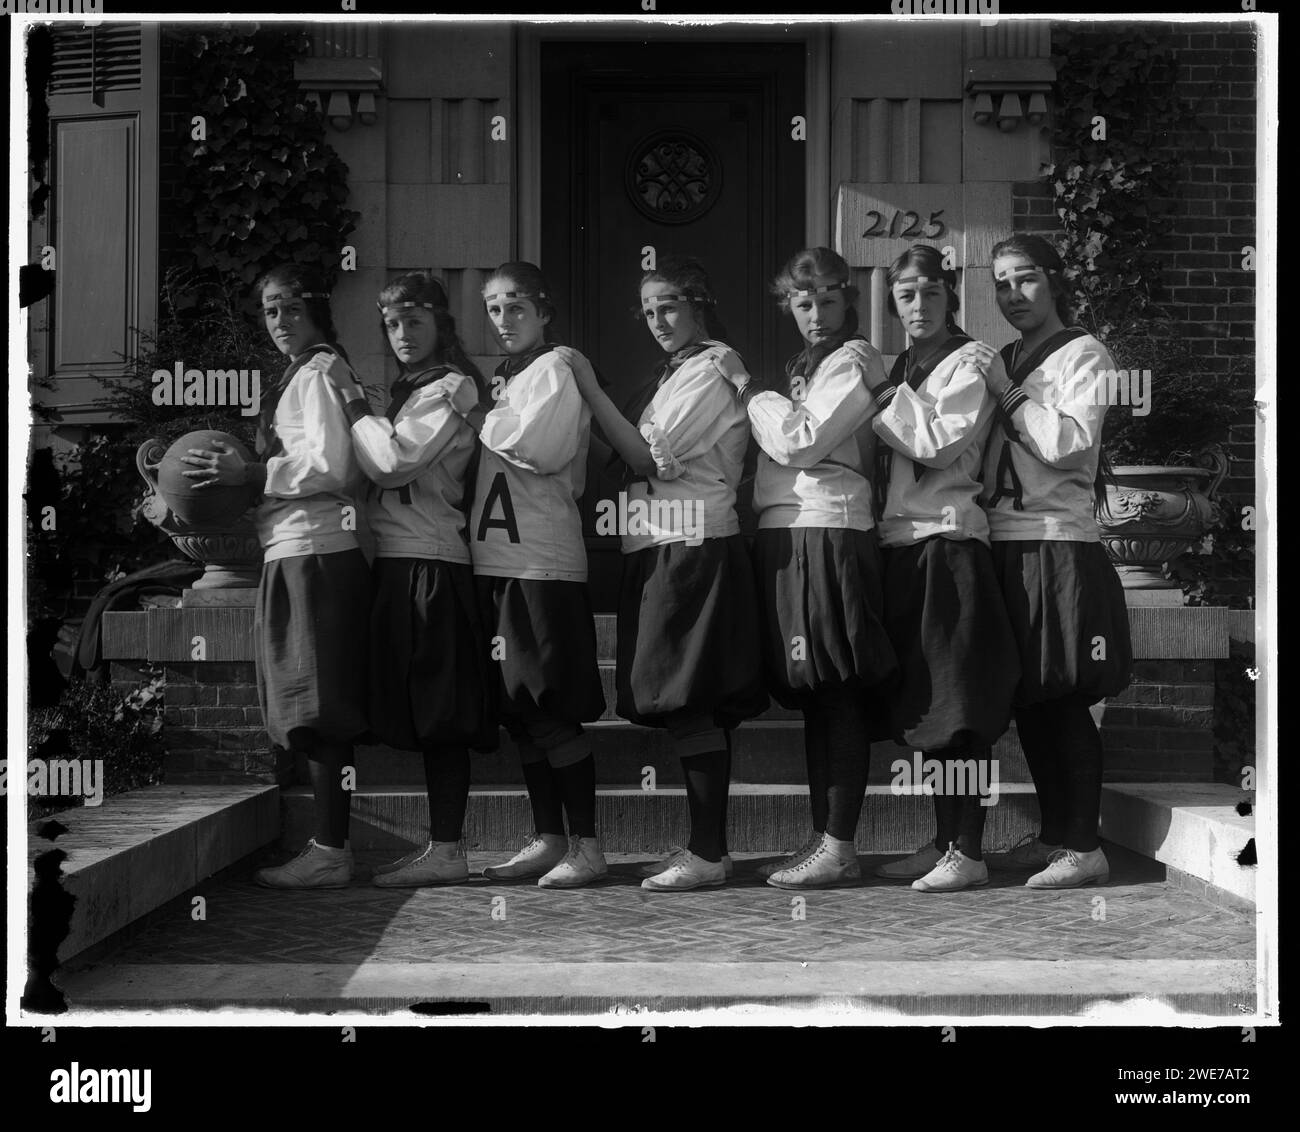 La squadra di pallacanestro della Holton Arms School, vestita con sfarzo e camicette di media grandezza, posa fuori dalla loro scuola privata femminile, Bethesda, Maryland. circa 1905. Foto di Harris & Ewing Foto Stock